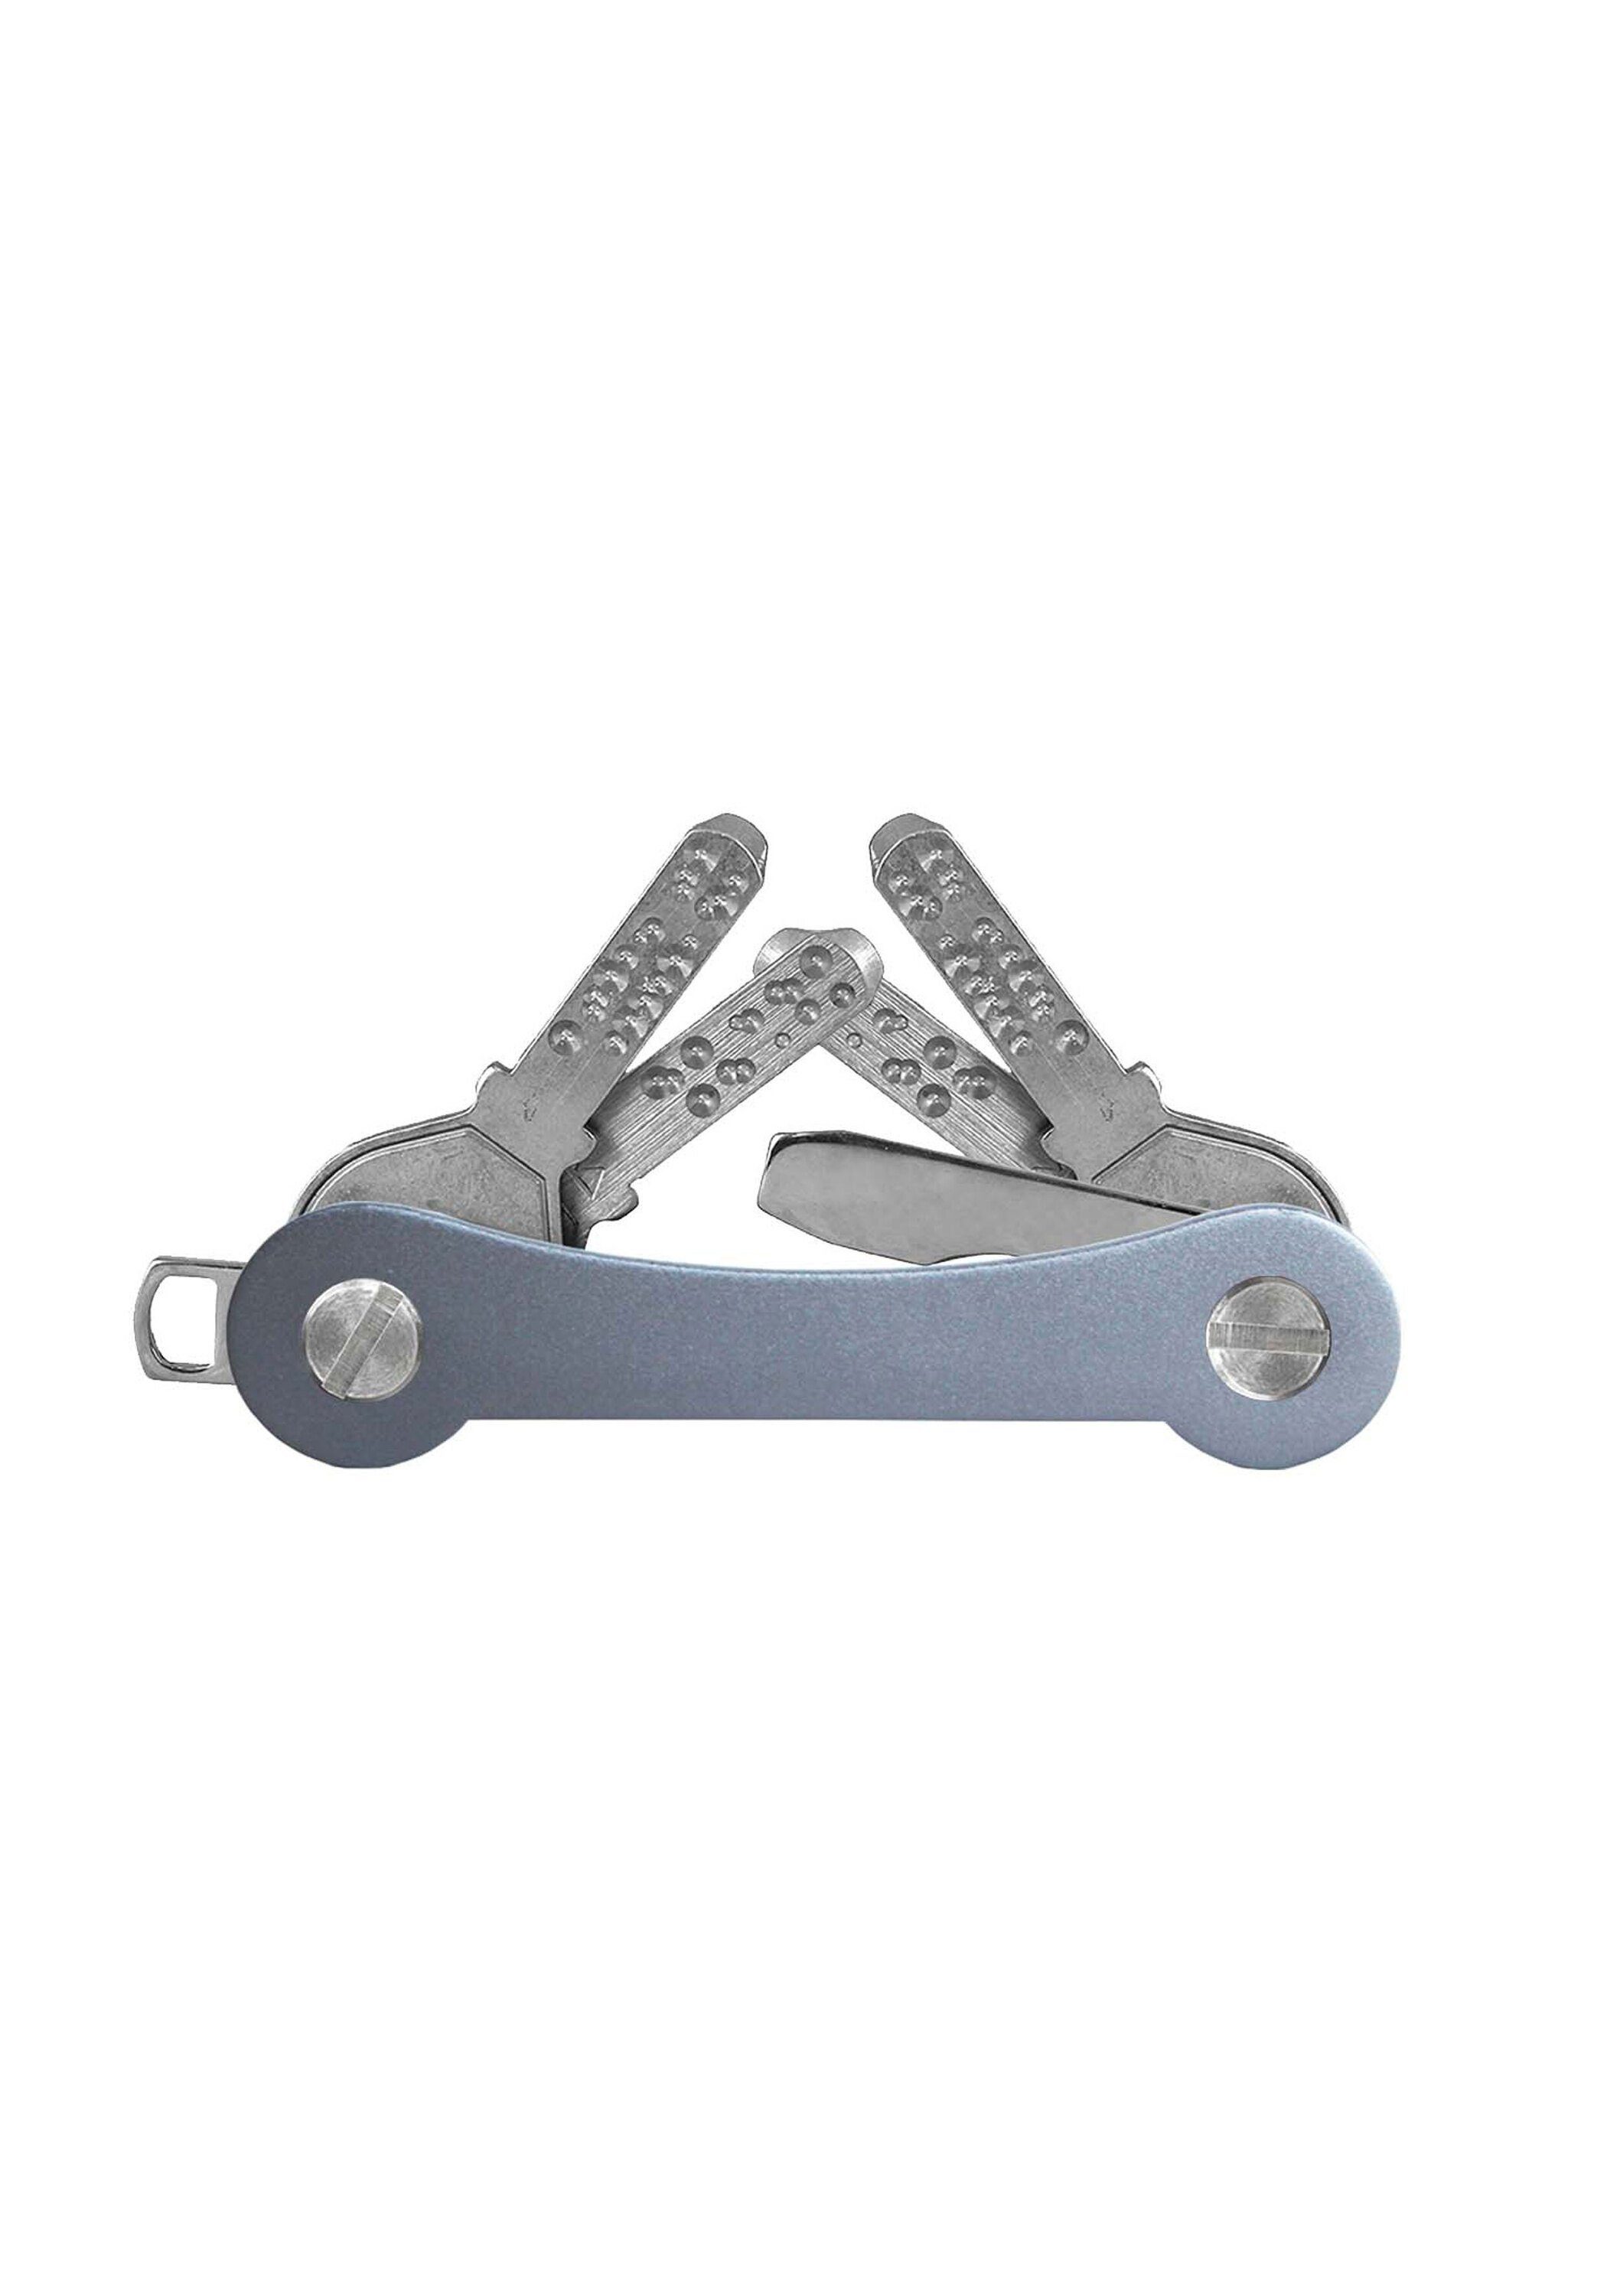 SWISS made Schlüsselanhänger keycabins grau Aluminium,